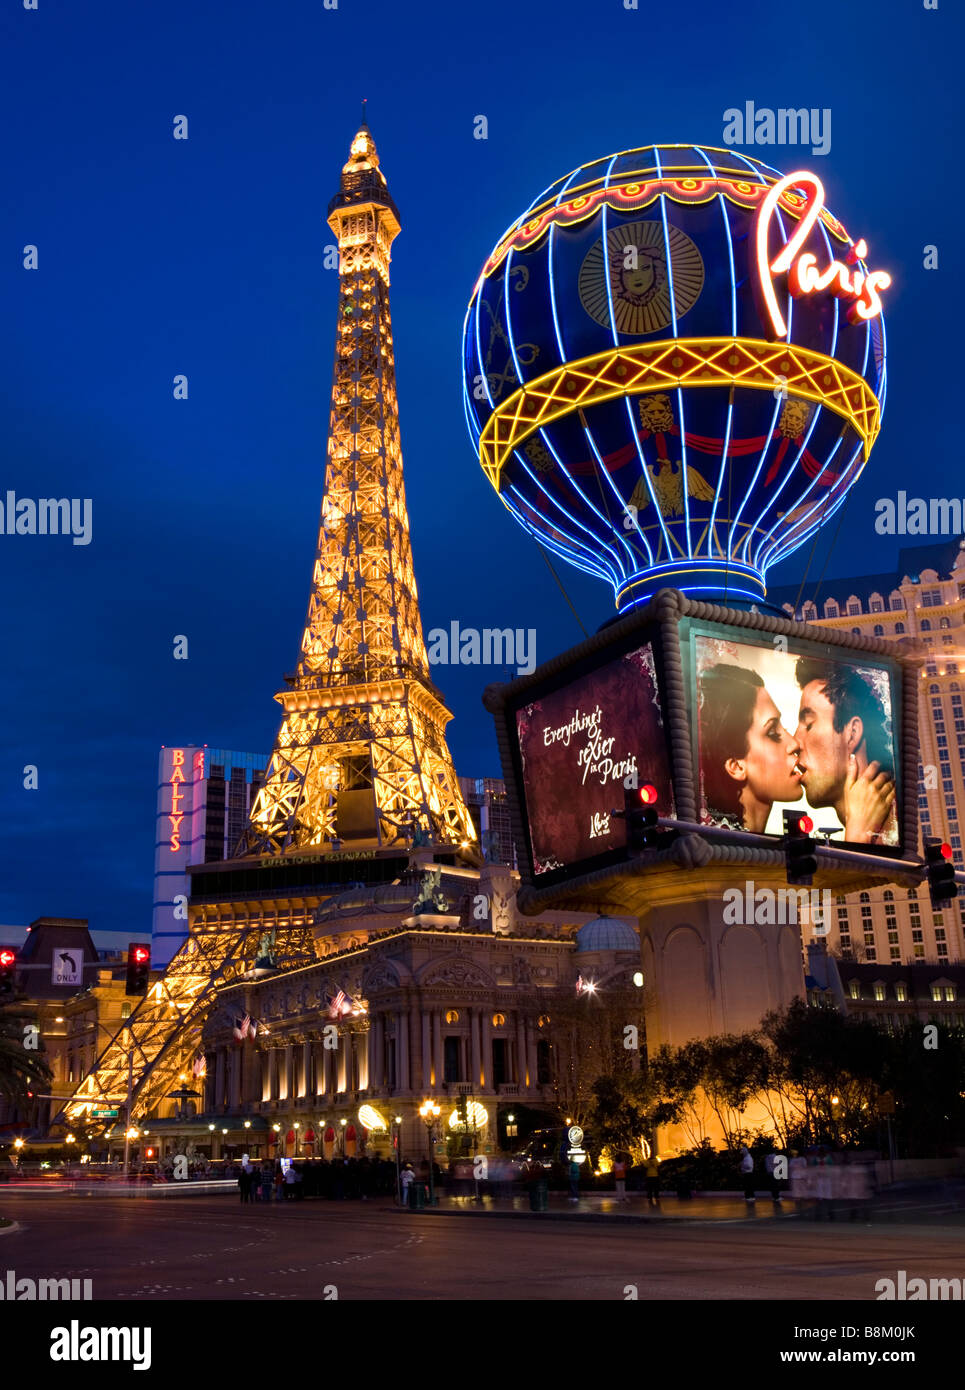 L'hôtel et casino de paris avec la Tour Eiffel sur le Strip de Las Vegas, Nevada, USA Banque D'Images